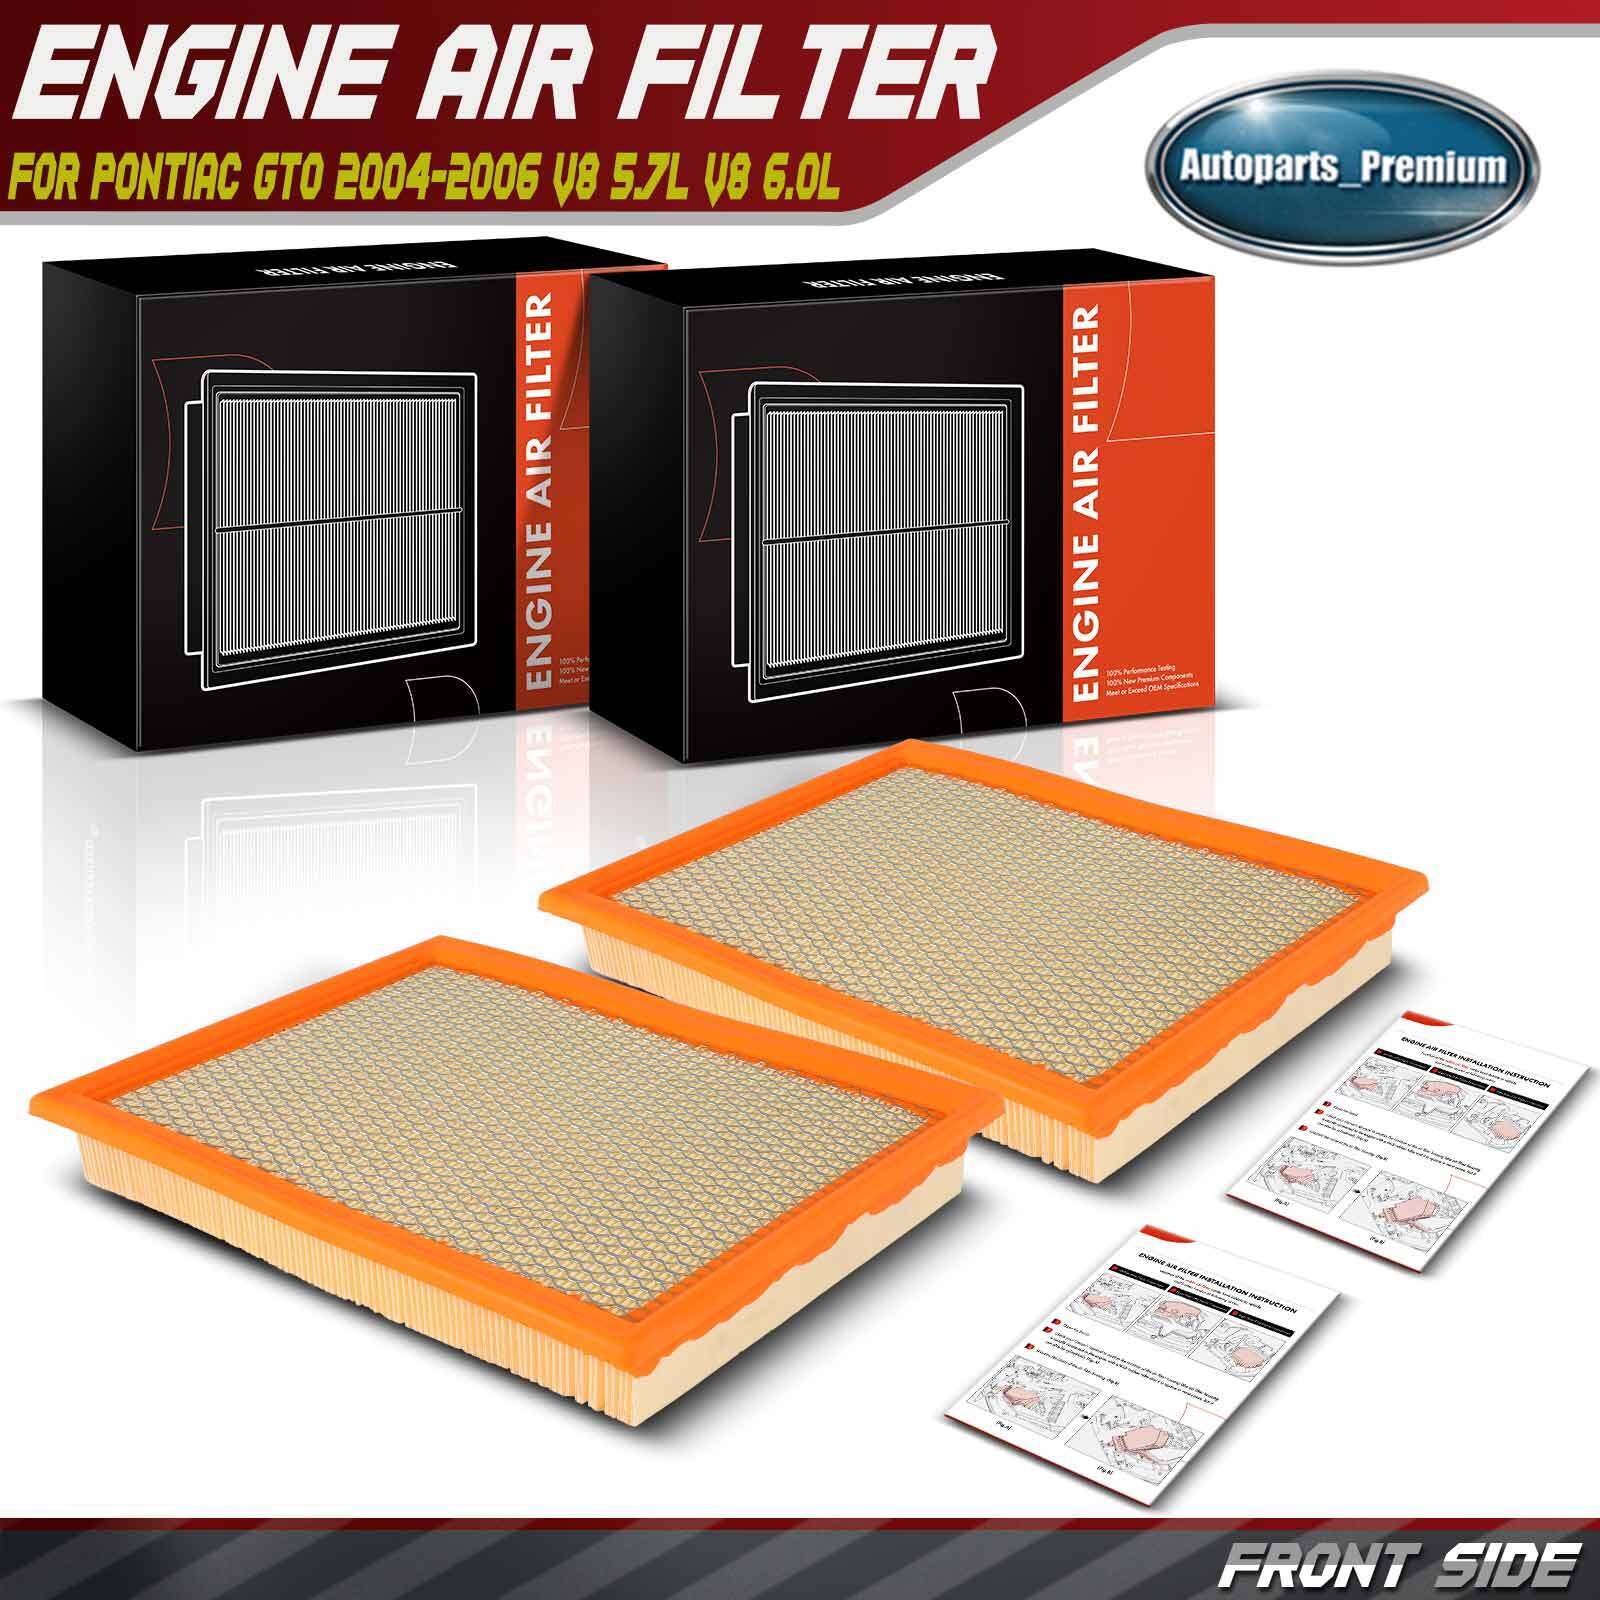 2Pcs Engine Air Filter for Pontiac GTO 2004 2005-2006 V8 5.7L V8 6.0L 92068161